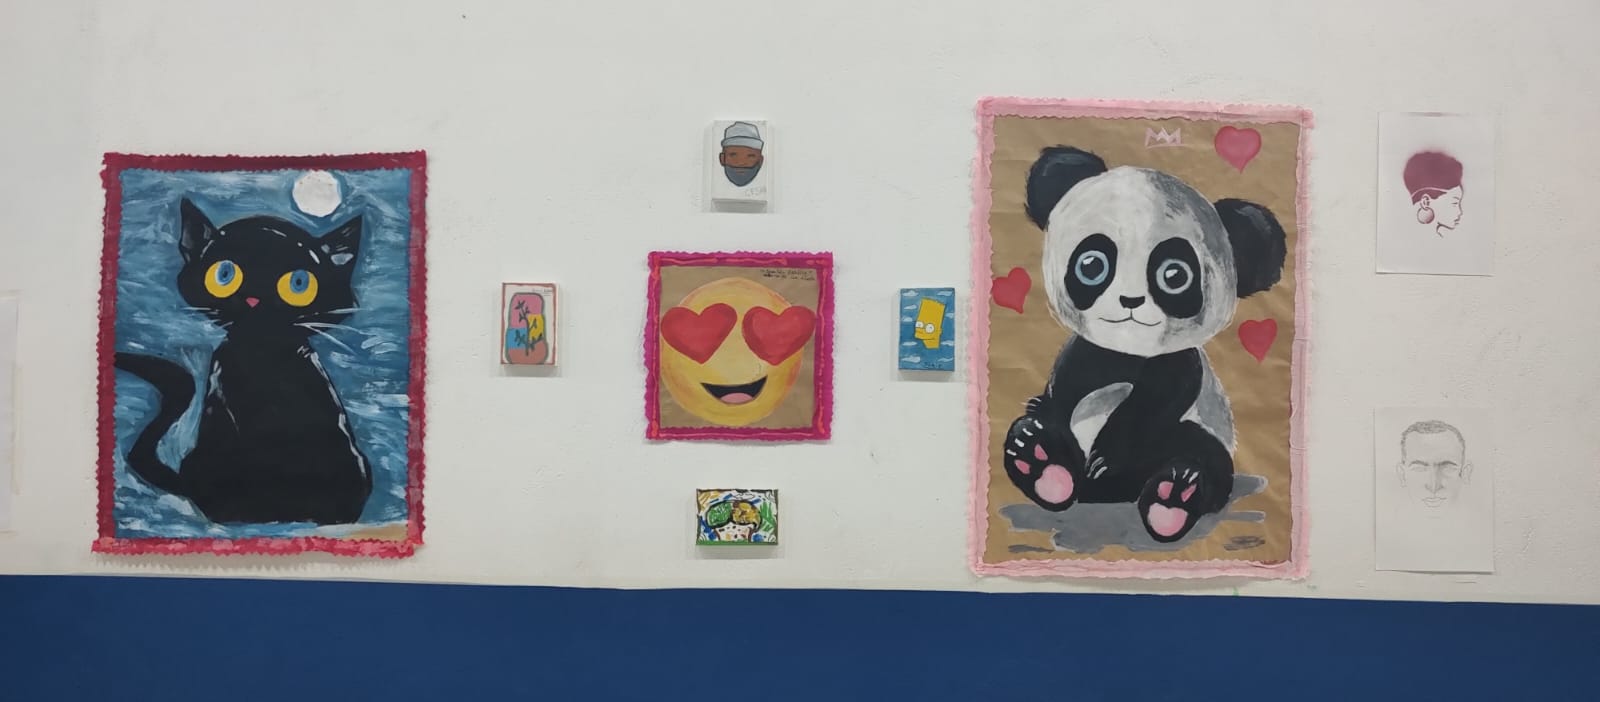 Na imagem, quadros são expostos em uma parede branca. O da esquerda, de um gato preto. Na direita, o desenho de um panda.